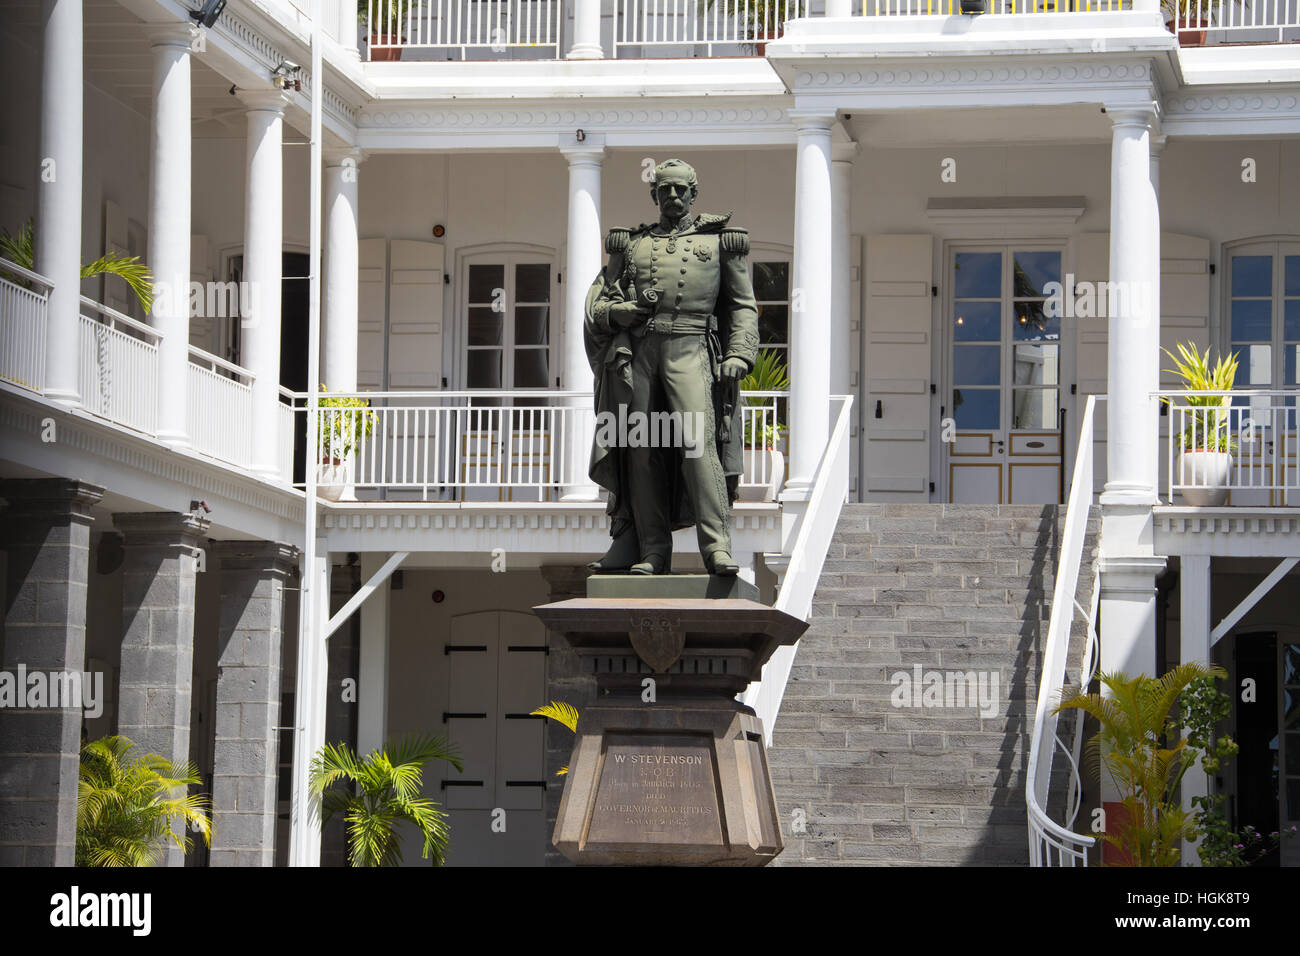 Statua di W Stevenson, primo governatore dell'Isola di Mauritius, la sede del governo francese, edificio coloniale ancora usato dal governo attuale Foto Stock